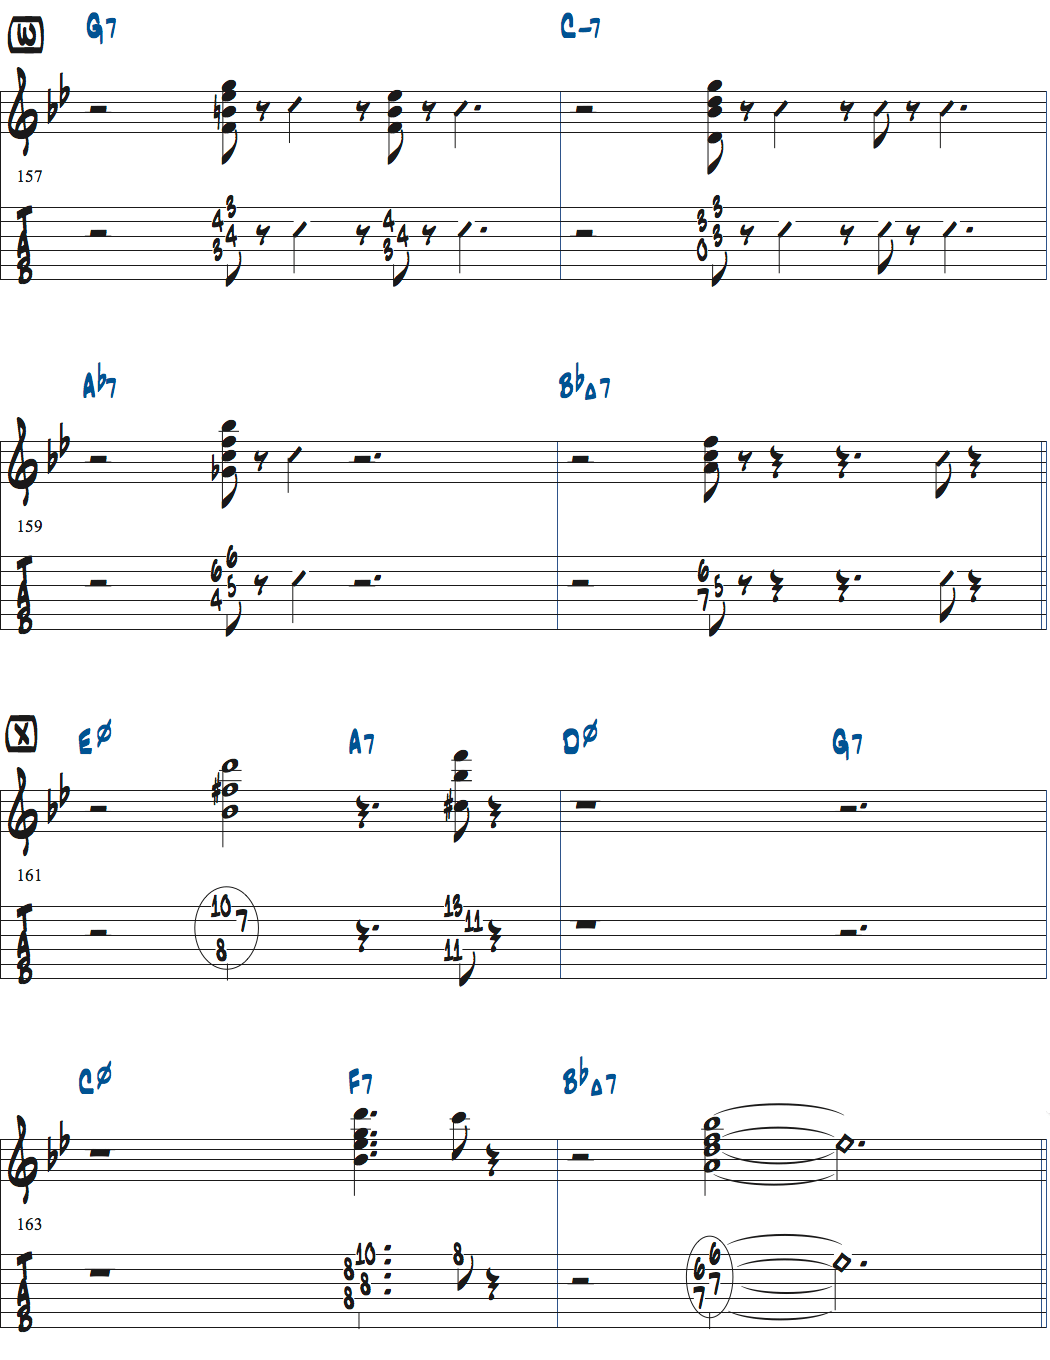 ジョナサン・クライスバーグの星影のステラベースソロのコンピング楽譜ページ6